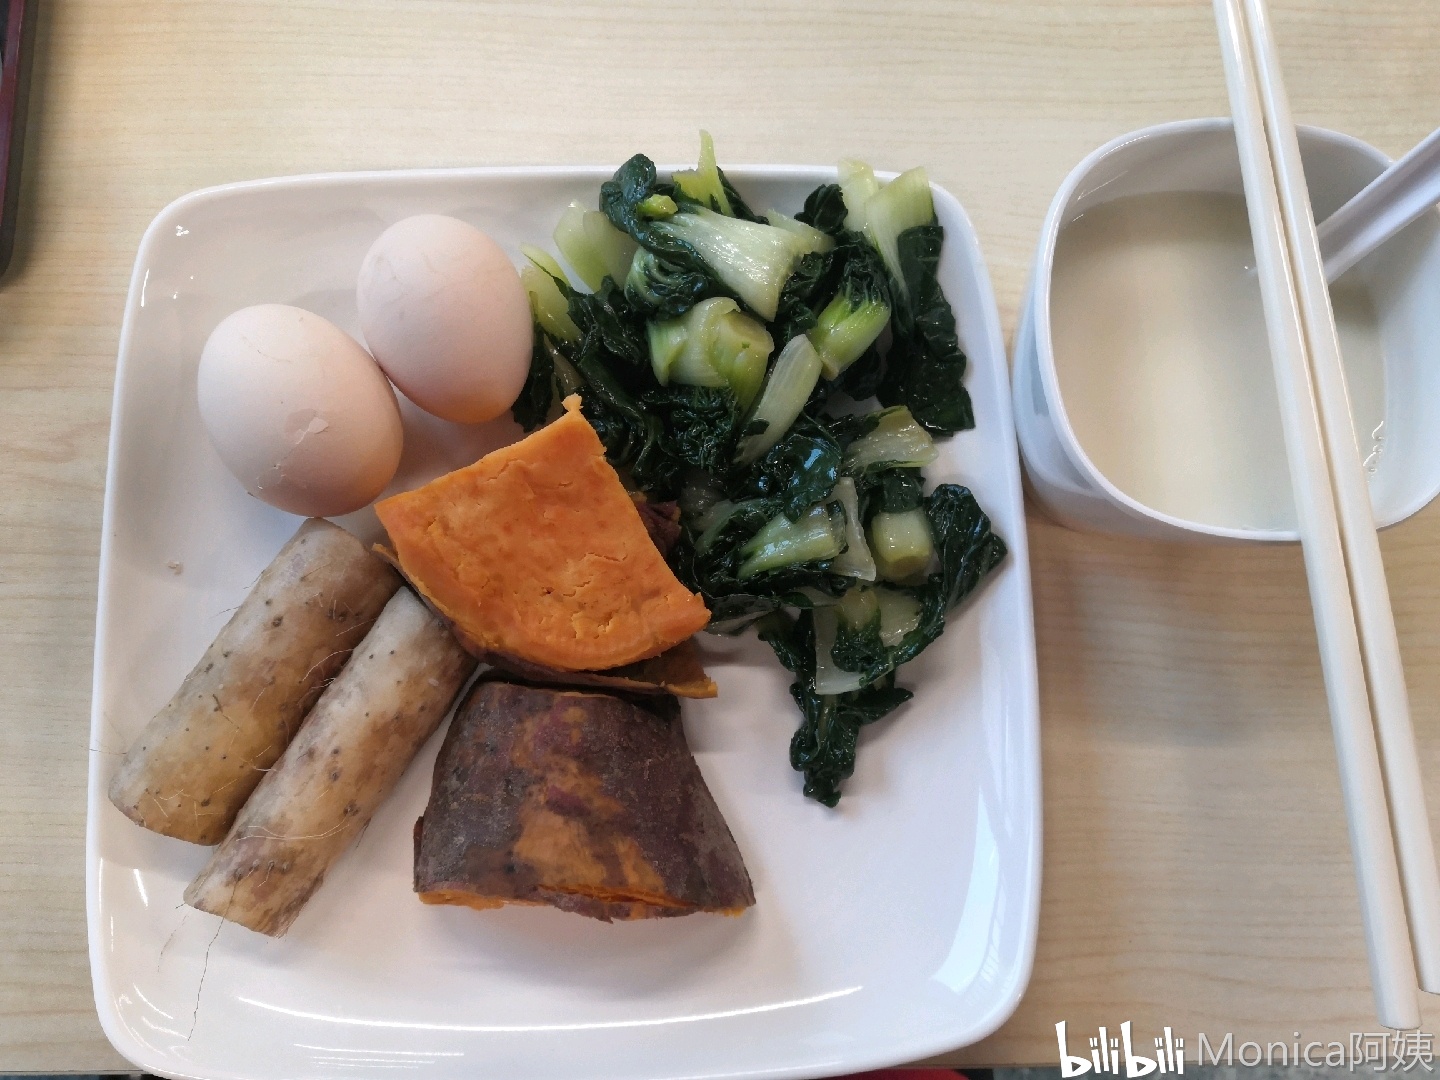 7.12在校一日食 42kg今天吃了酱油豆腐 - 哔哩哔哩